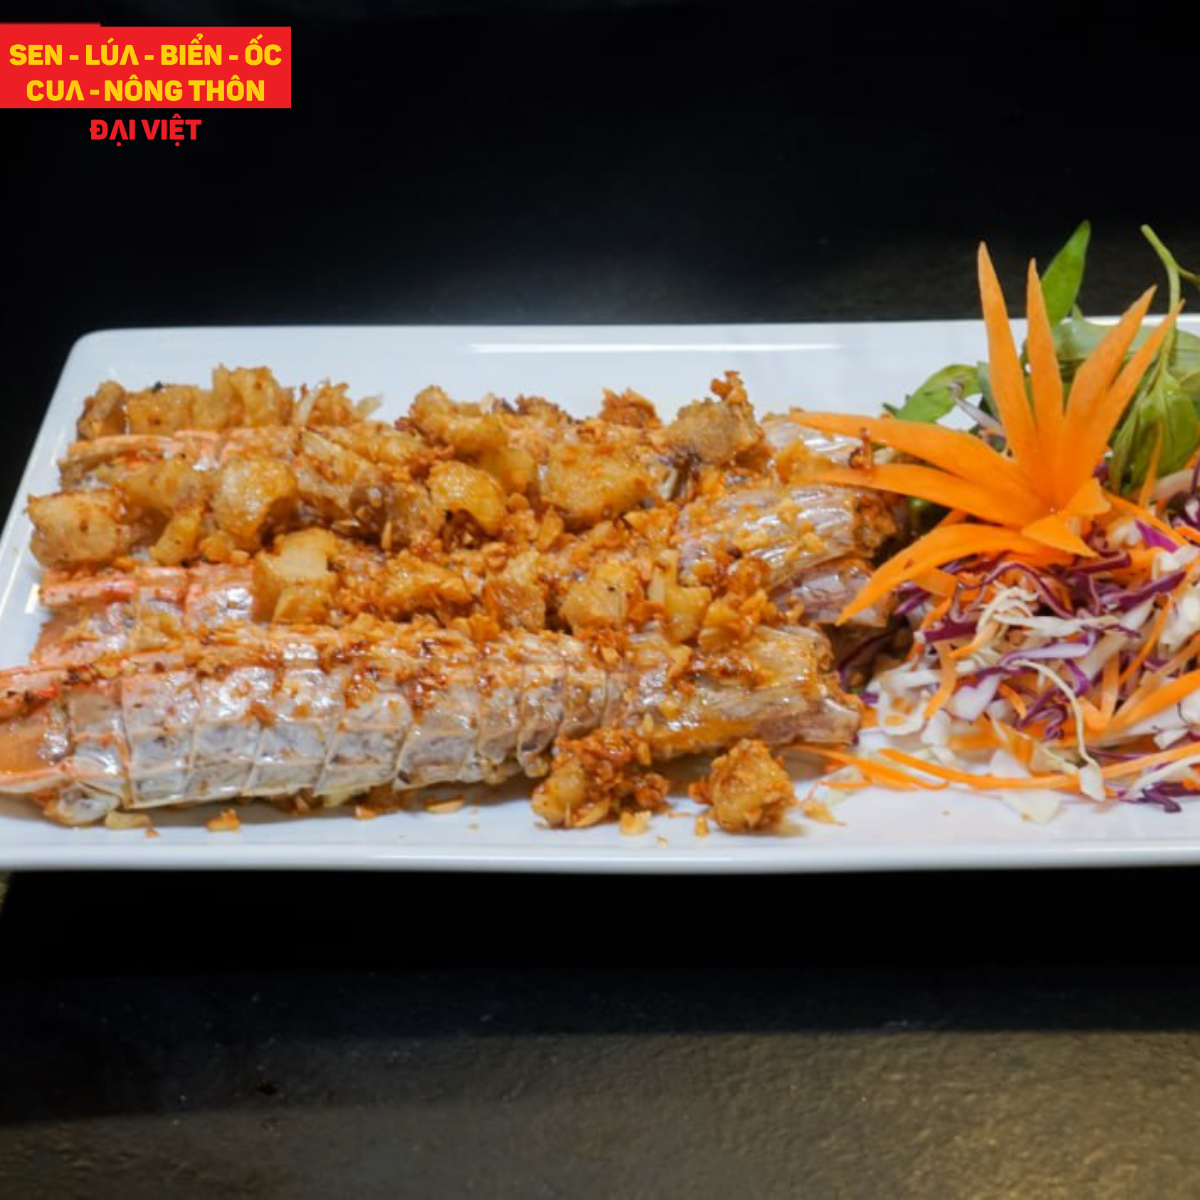  Pan-fried Live Mantis Shrimp With Garlic & Butter - Tôm Tích Cháy Bơ Tỏi (Giá tính theo phần 300 gram) 